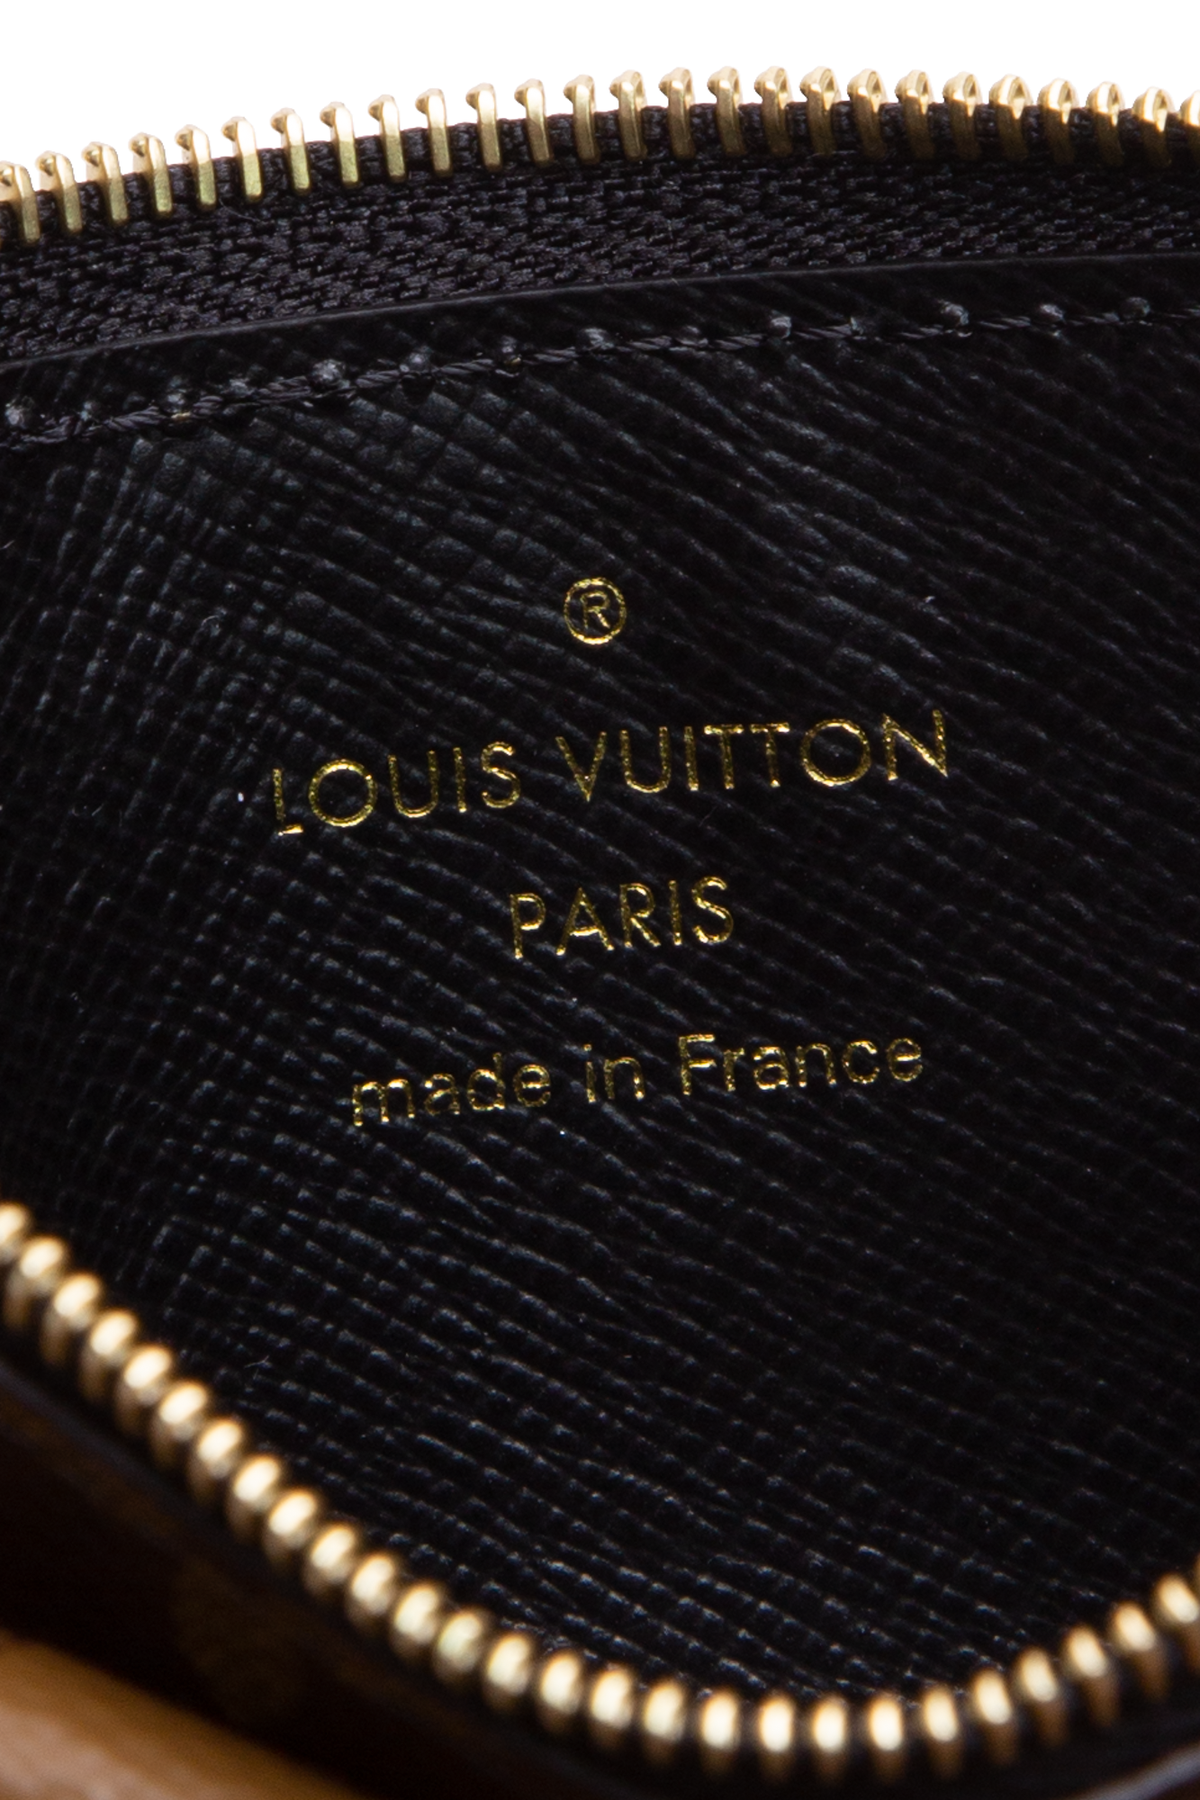 Louis Vuitton Recto Verso Card Holders